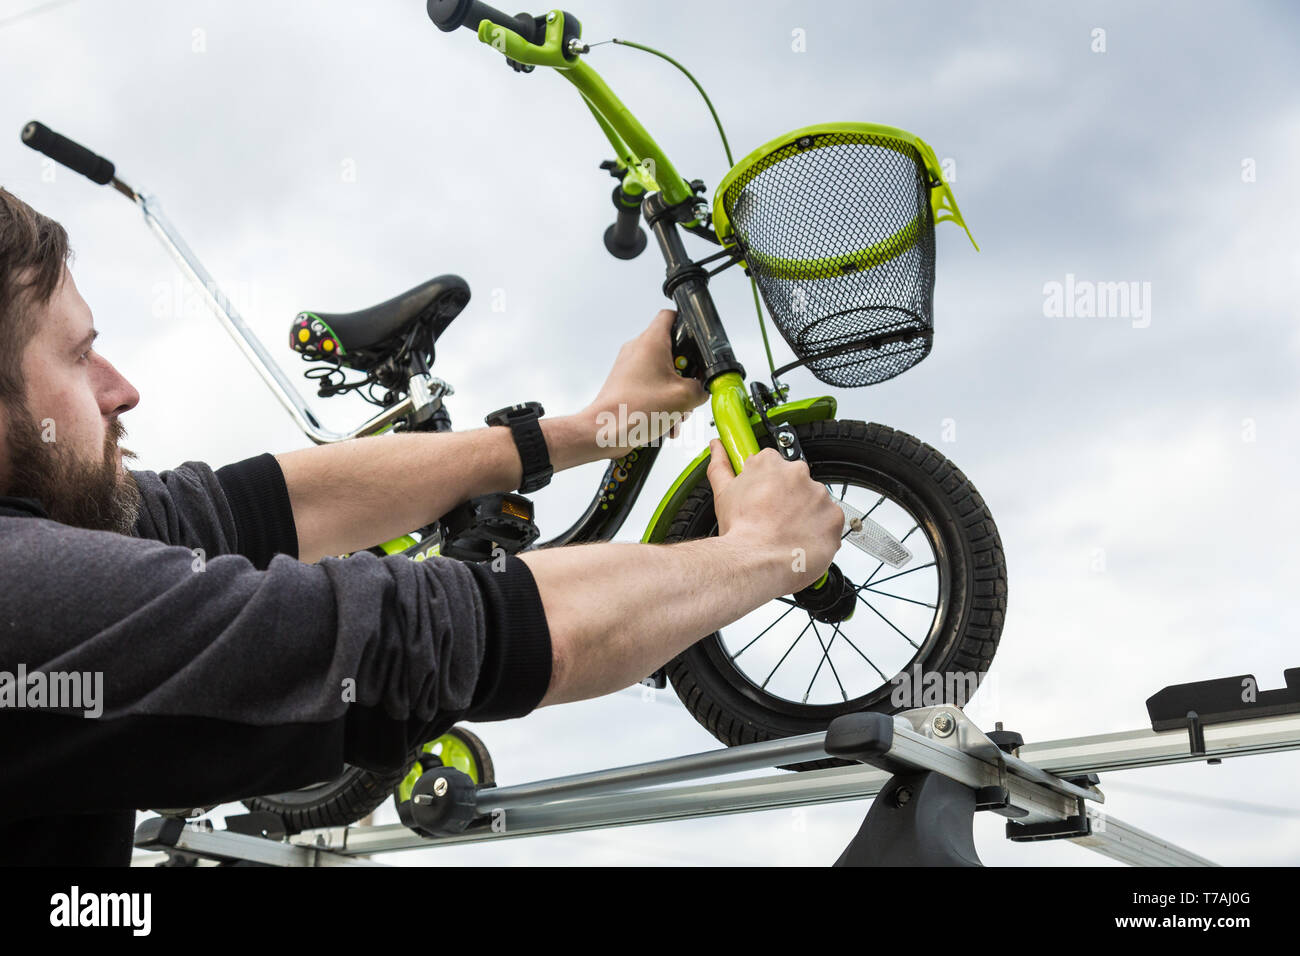 El transporte de la bicicleta - un hombre fija e instala una bicicleta  infantil sobre el techo de un coche en un montaje especial para el  transporte de bicicletas. La decisión t